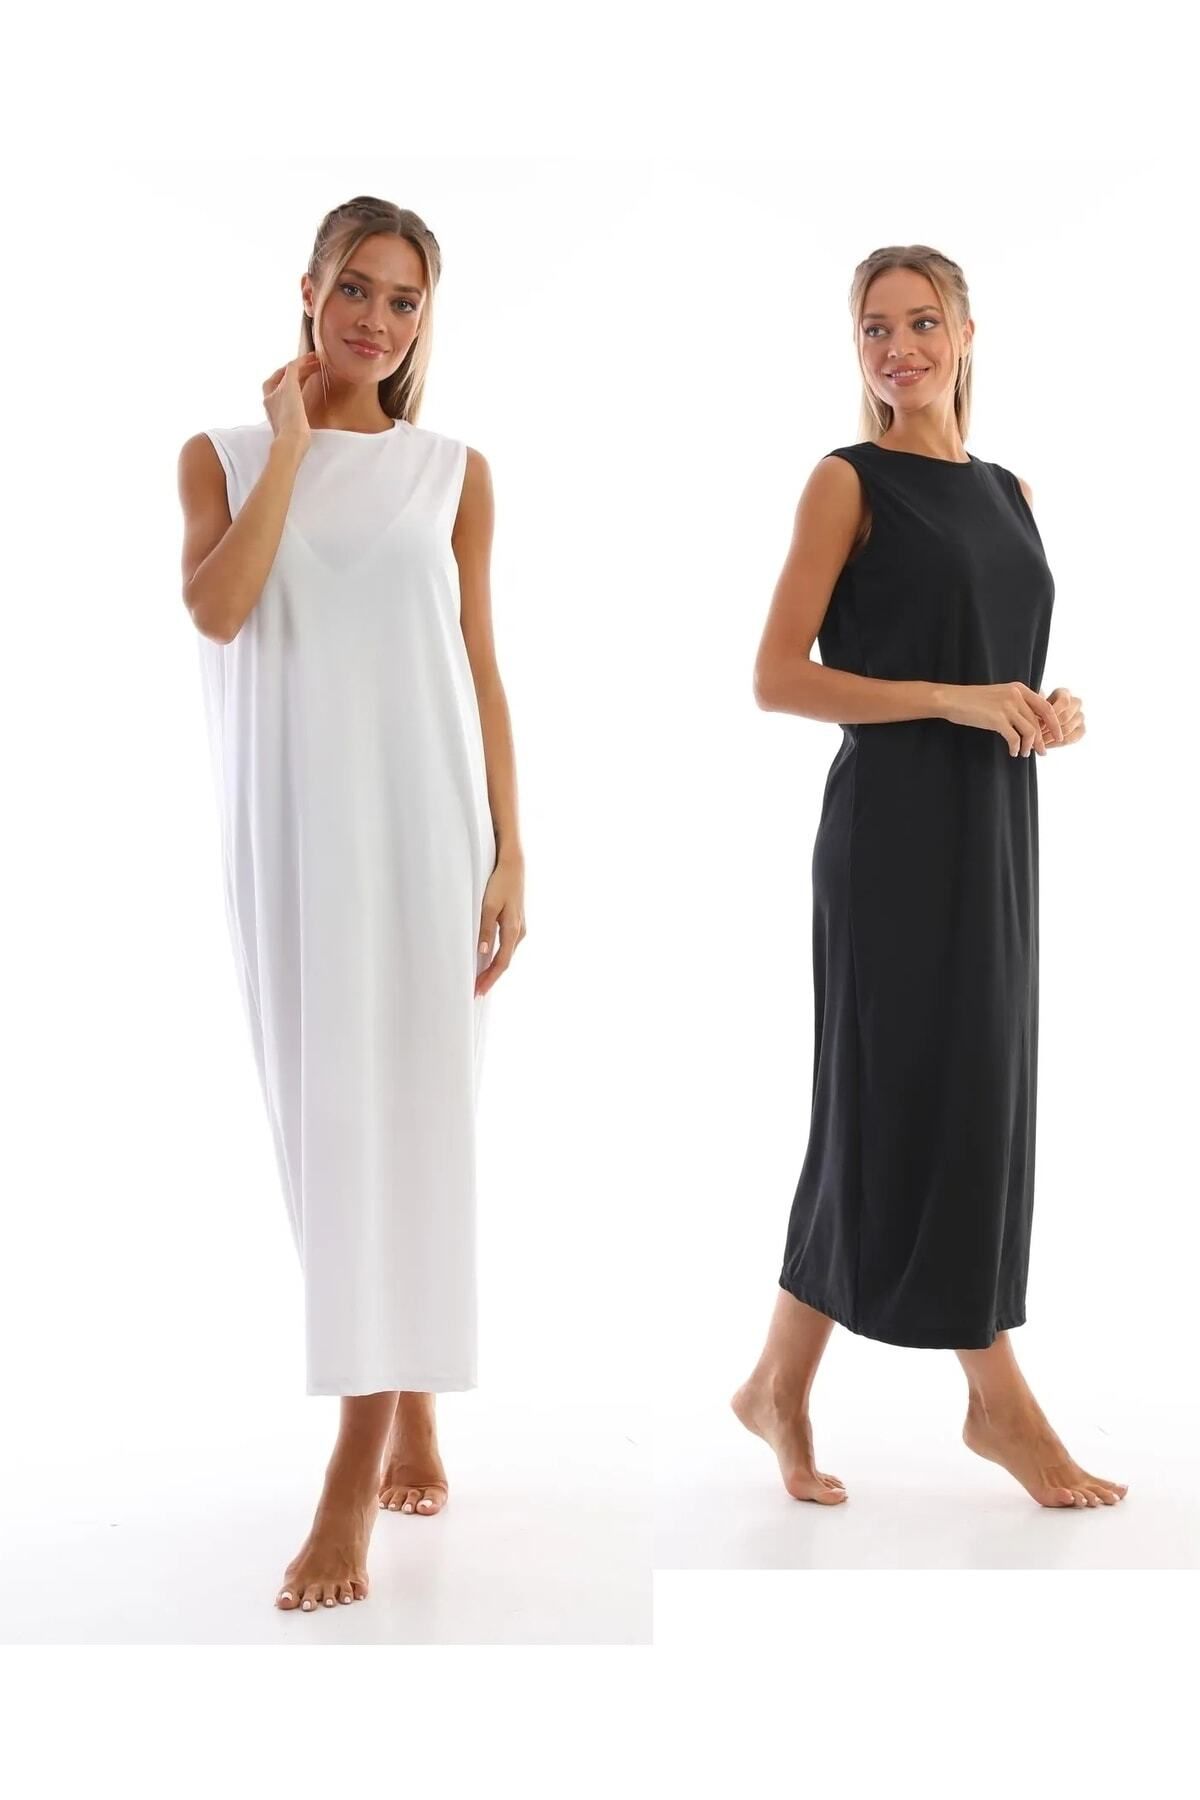 medipek Kolsuz Elbise Astarı Içlik Jupon Siyah Beyaz 2li Set